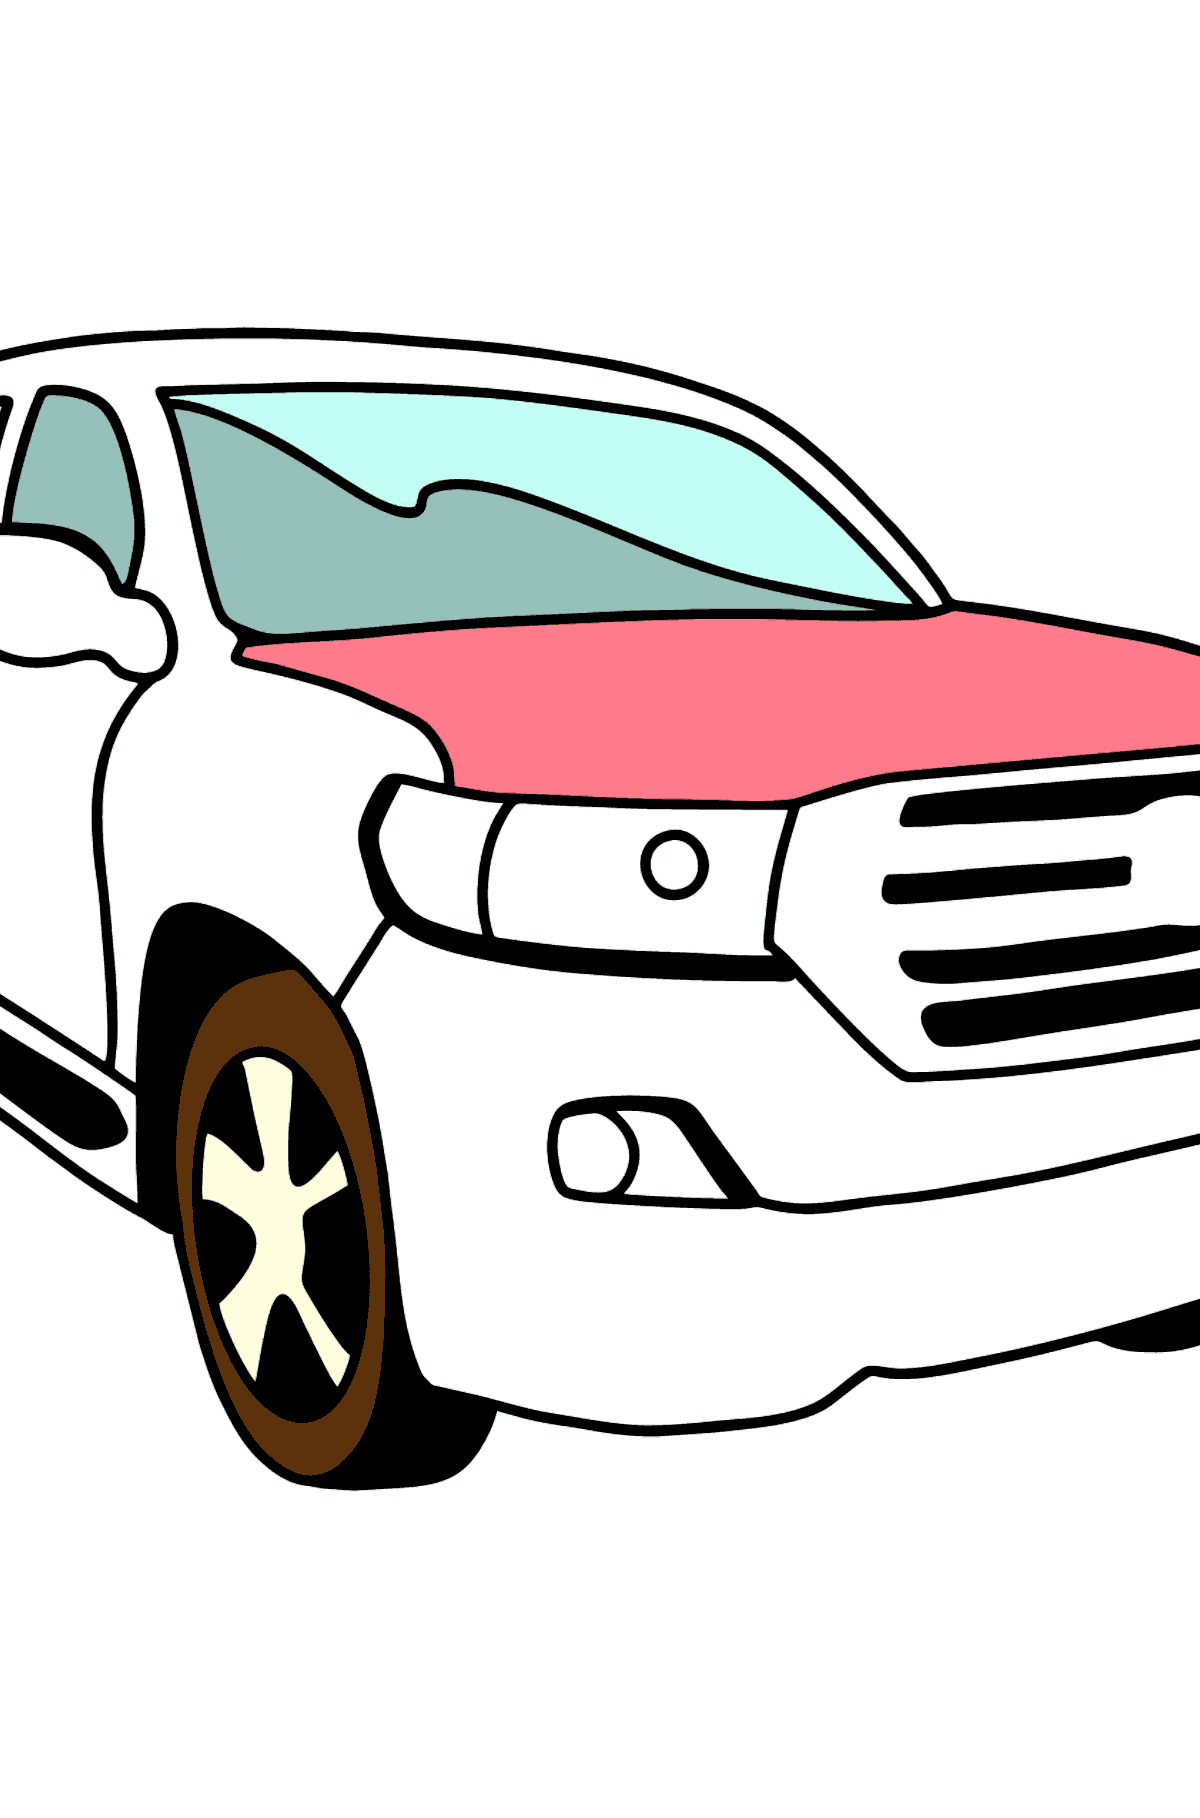 Disegno di Auto Toyota Land Cruiser da colorare - Disegni da colorare per bambini